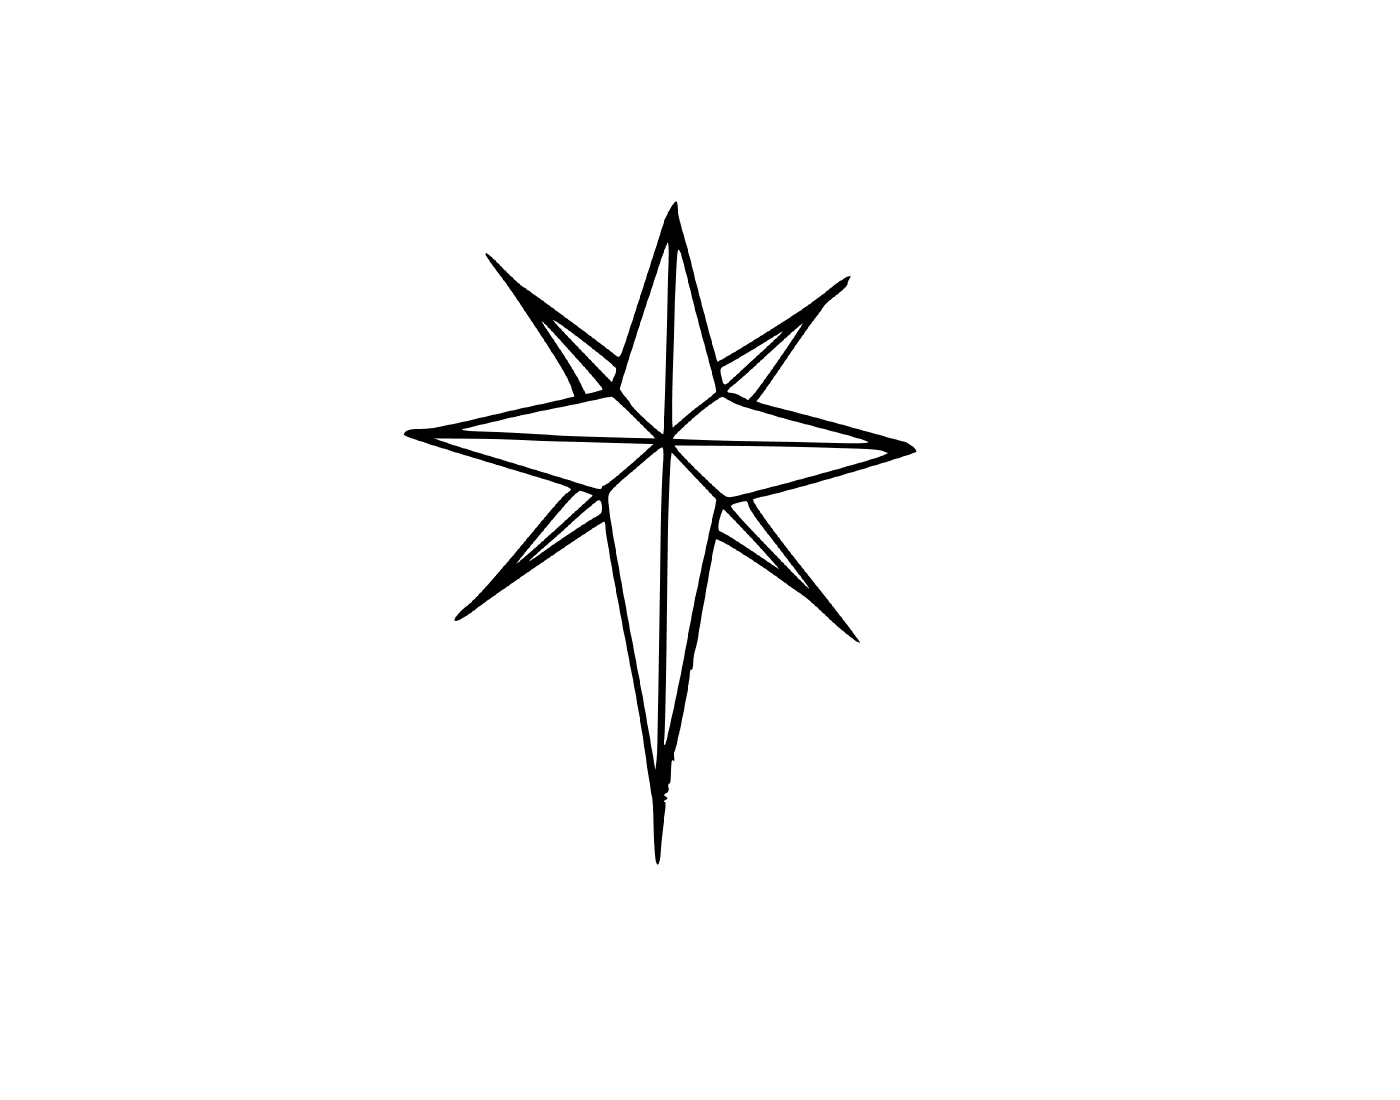  Uma estrela de Natal com oito ramos 